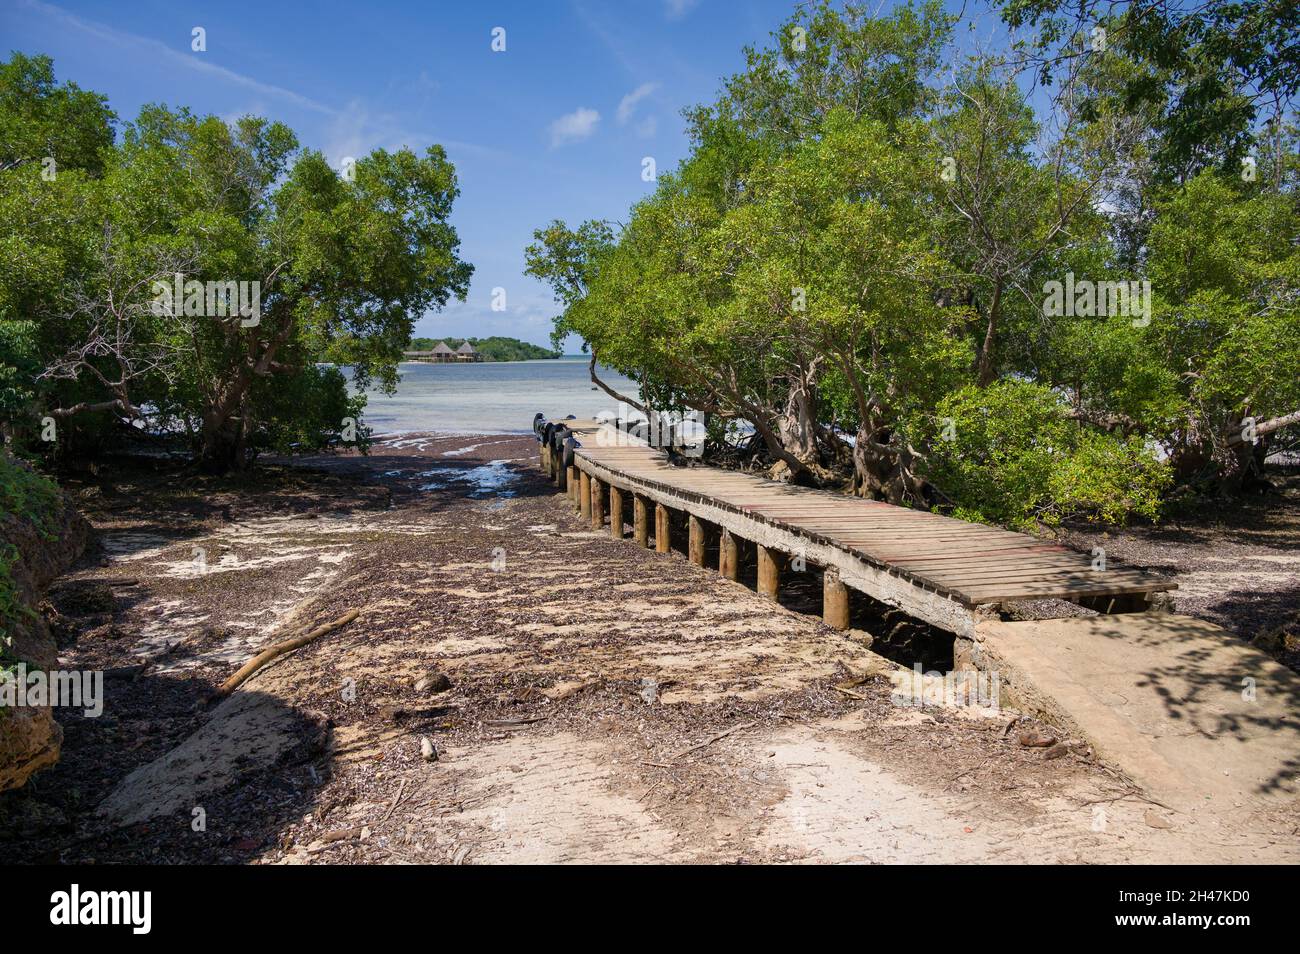 Jetée en bois bordée de mangroves (Rhizophora mucronata) à marée basse, Kenya, Afrique de l'est Banque D'Images